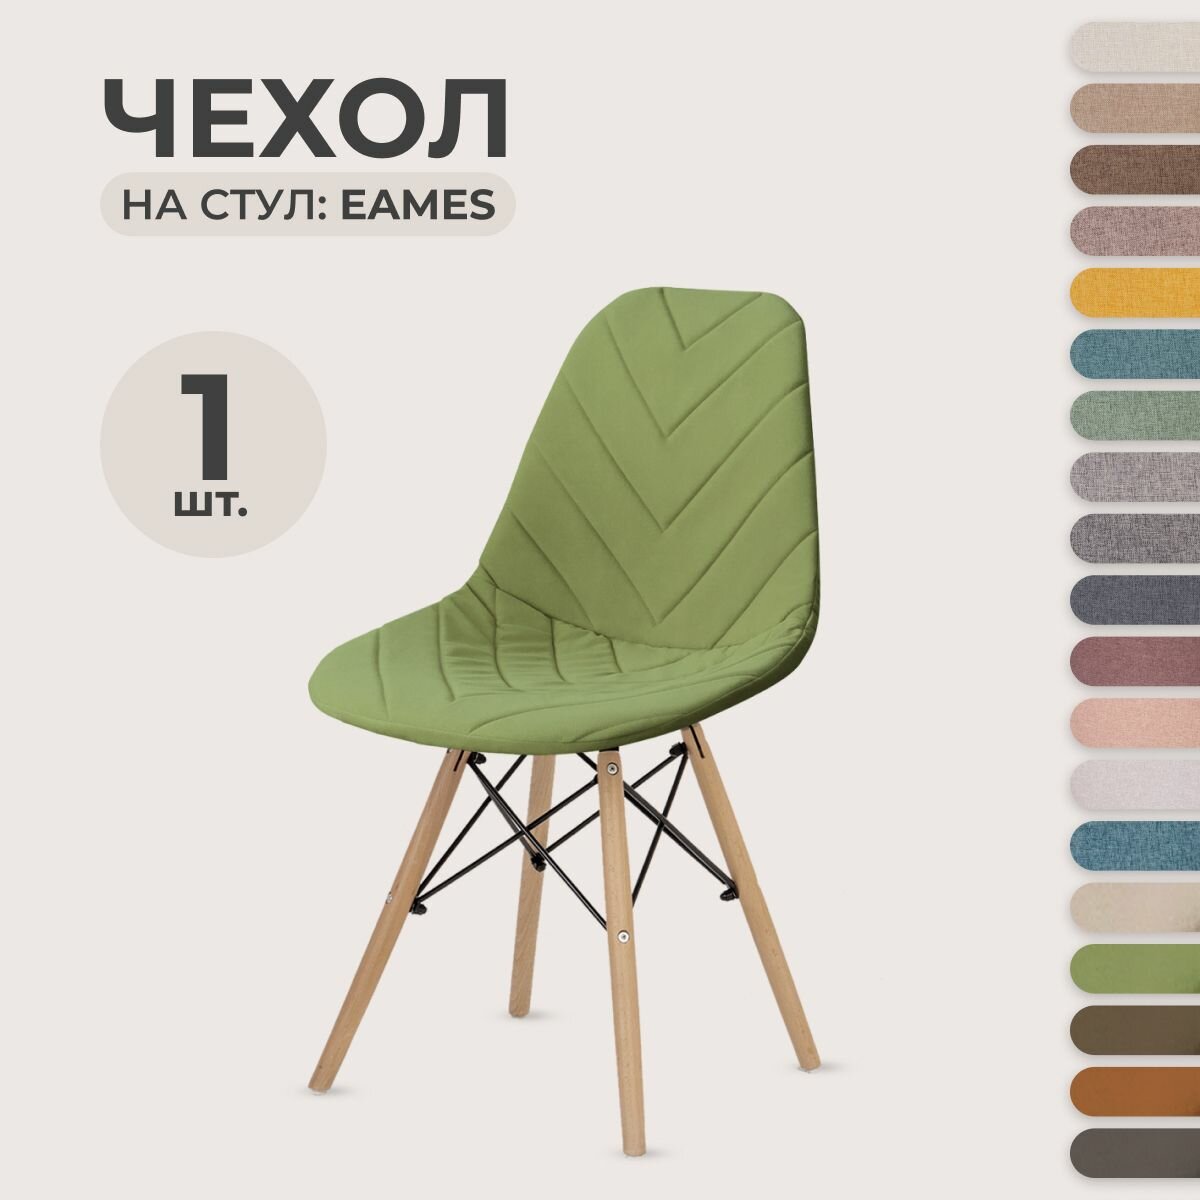 Чехол для стула LuxAlto в стиле Eames, ткань Велюр с прострочкой, Травянистый, 1 шт.